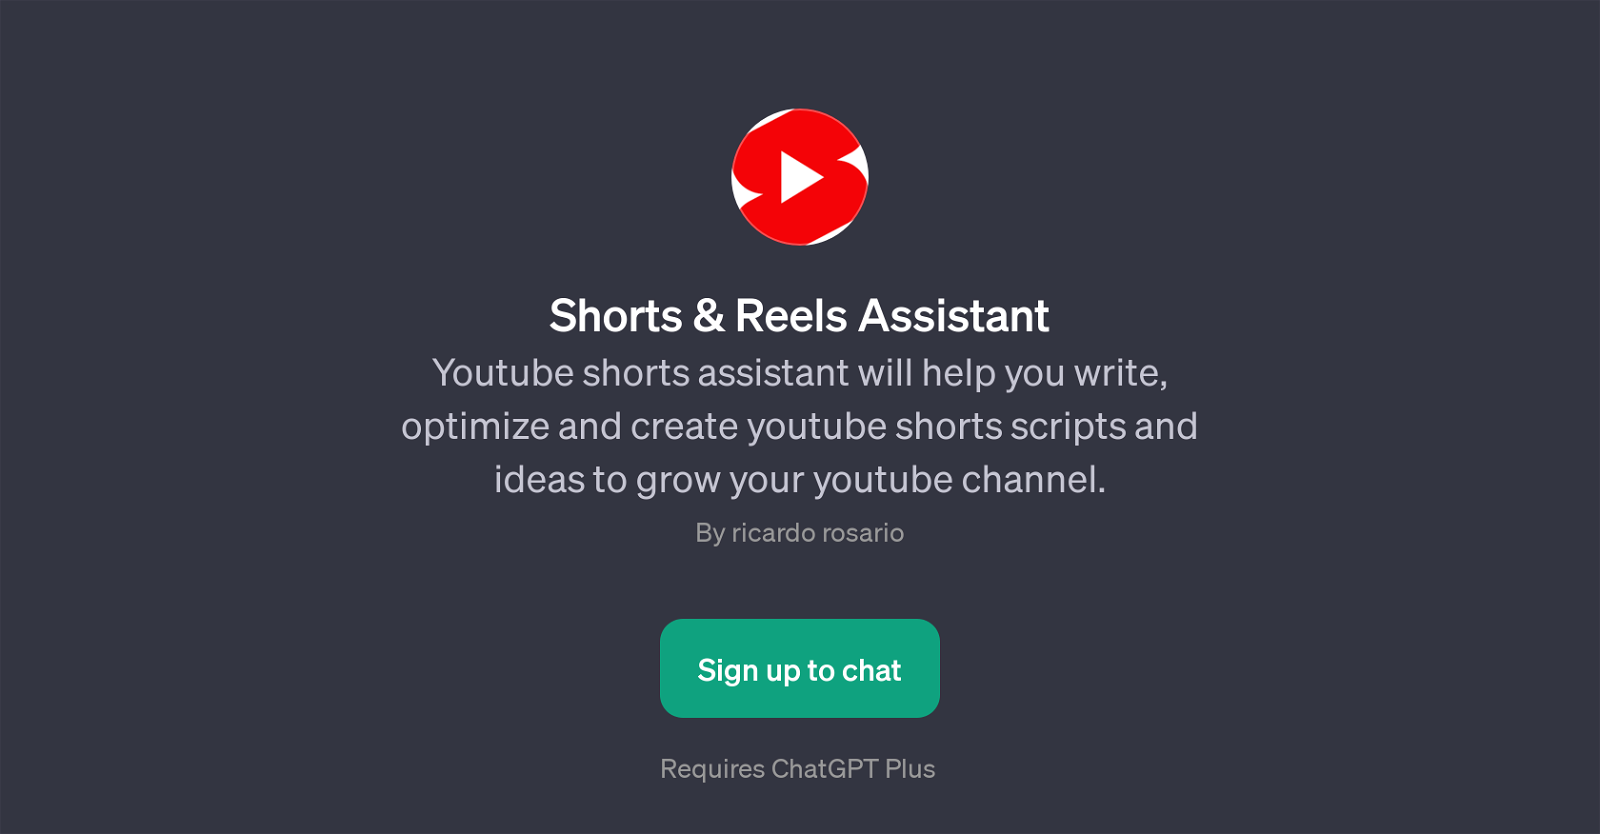 Shorts & Reels Assistant website